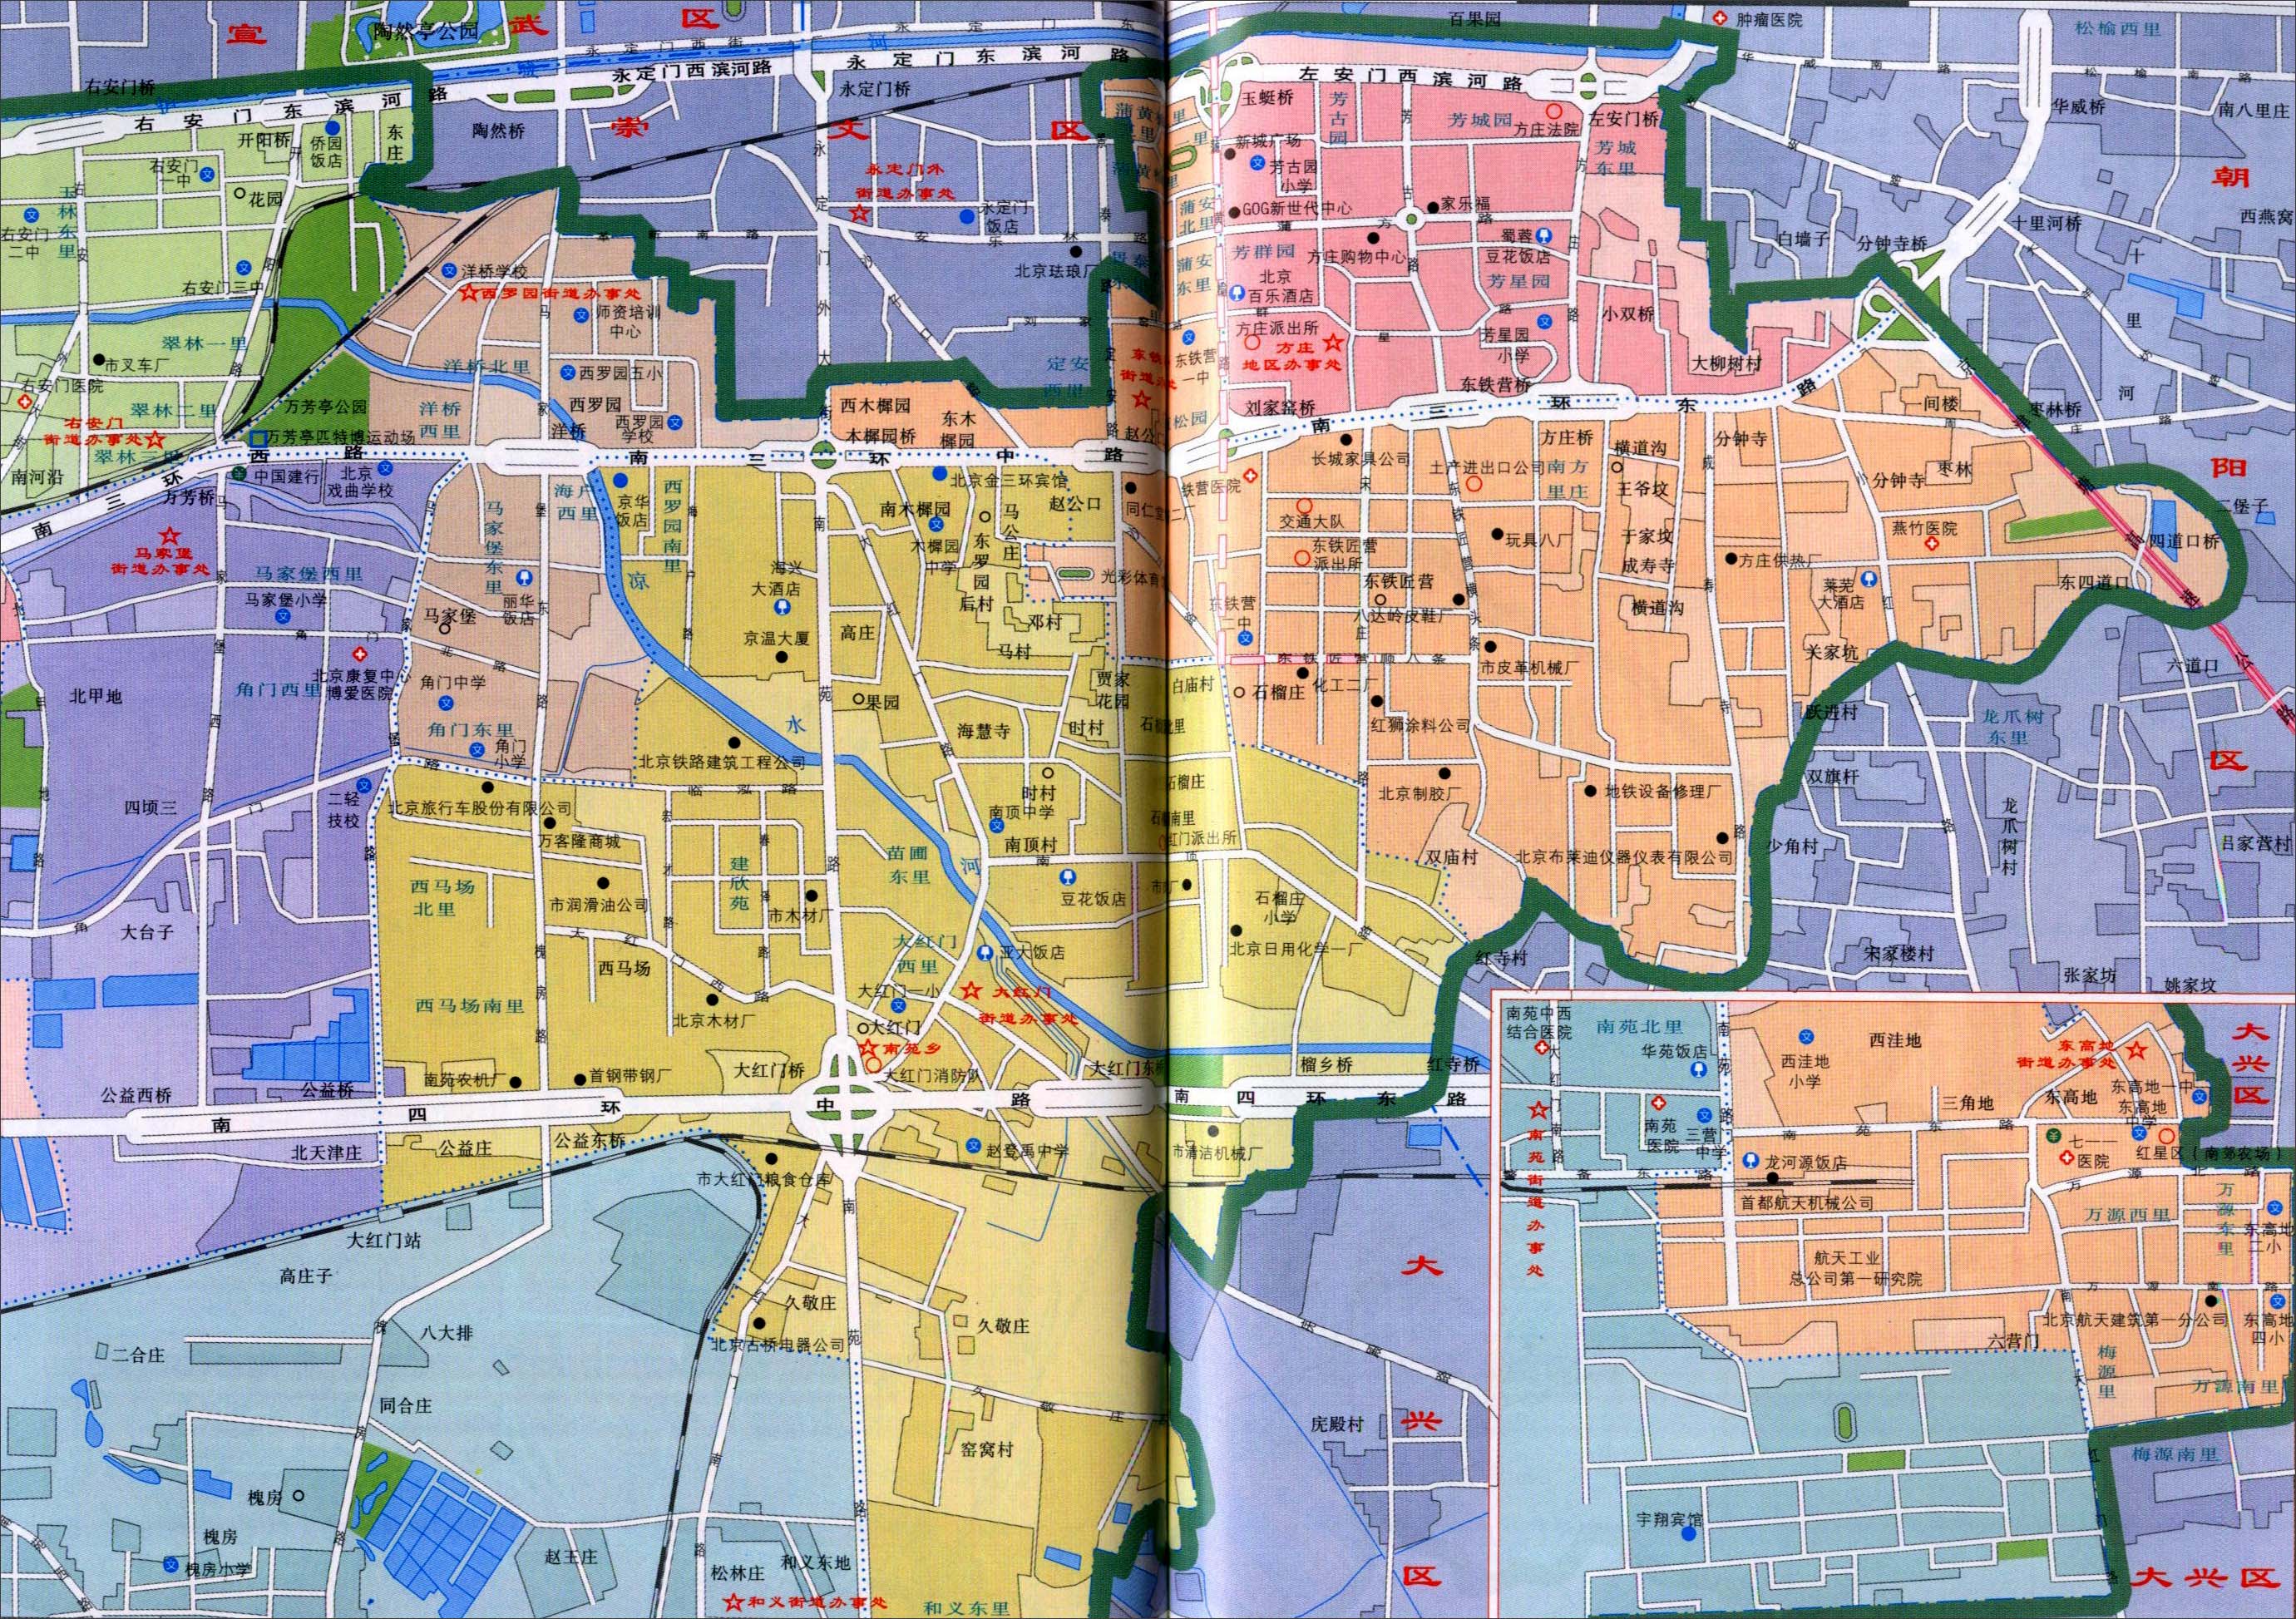 中国地图 北京 丰台区